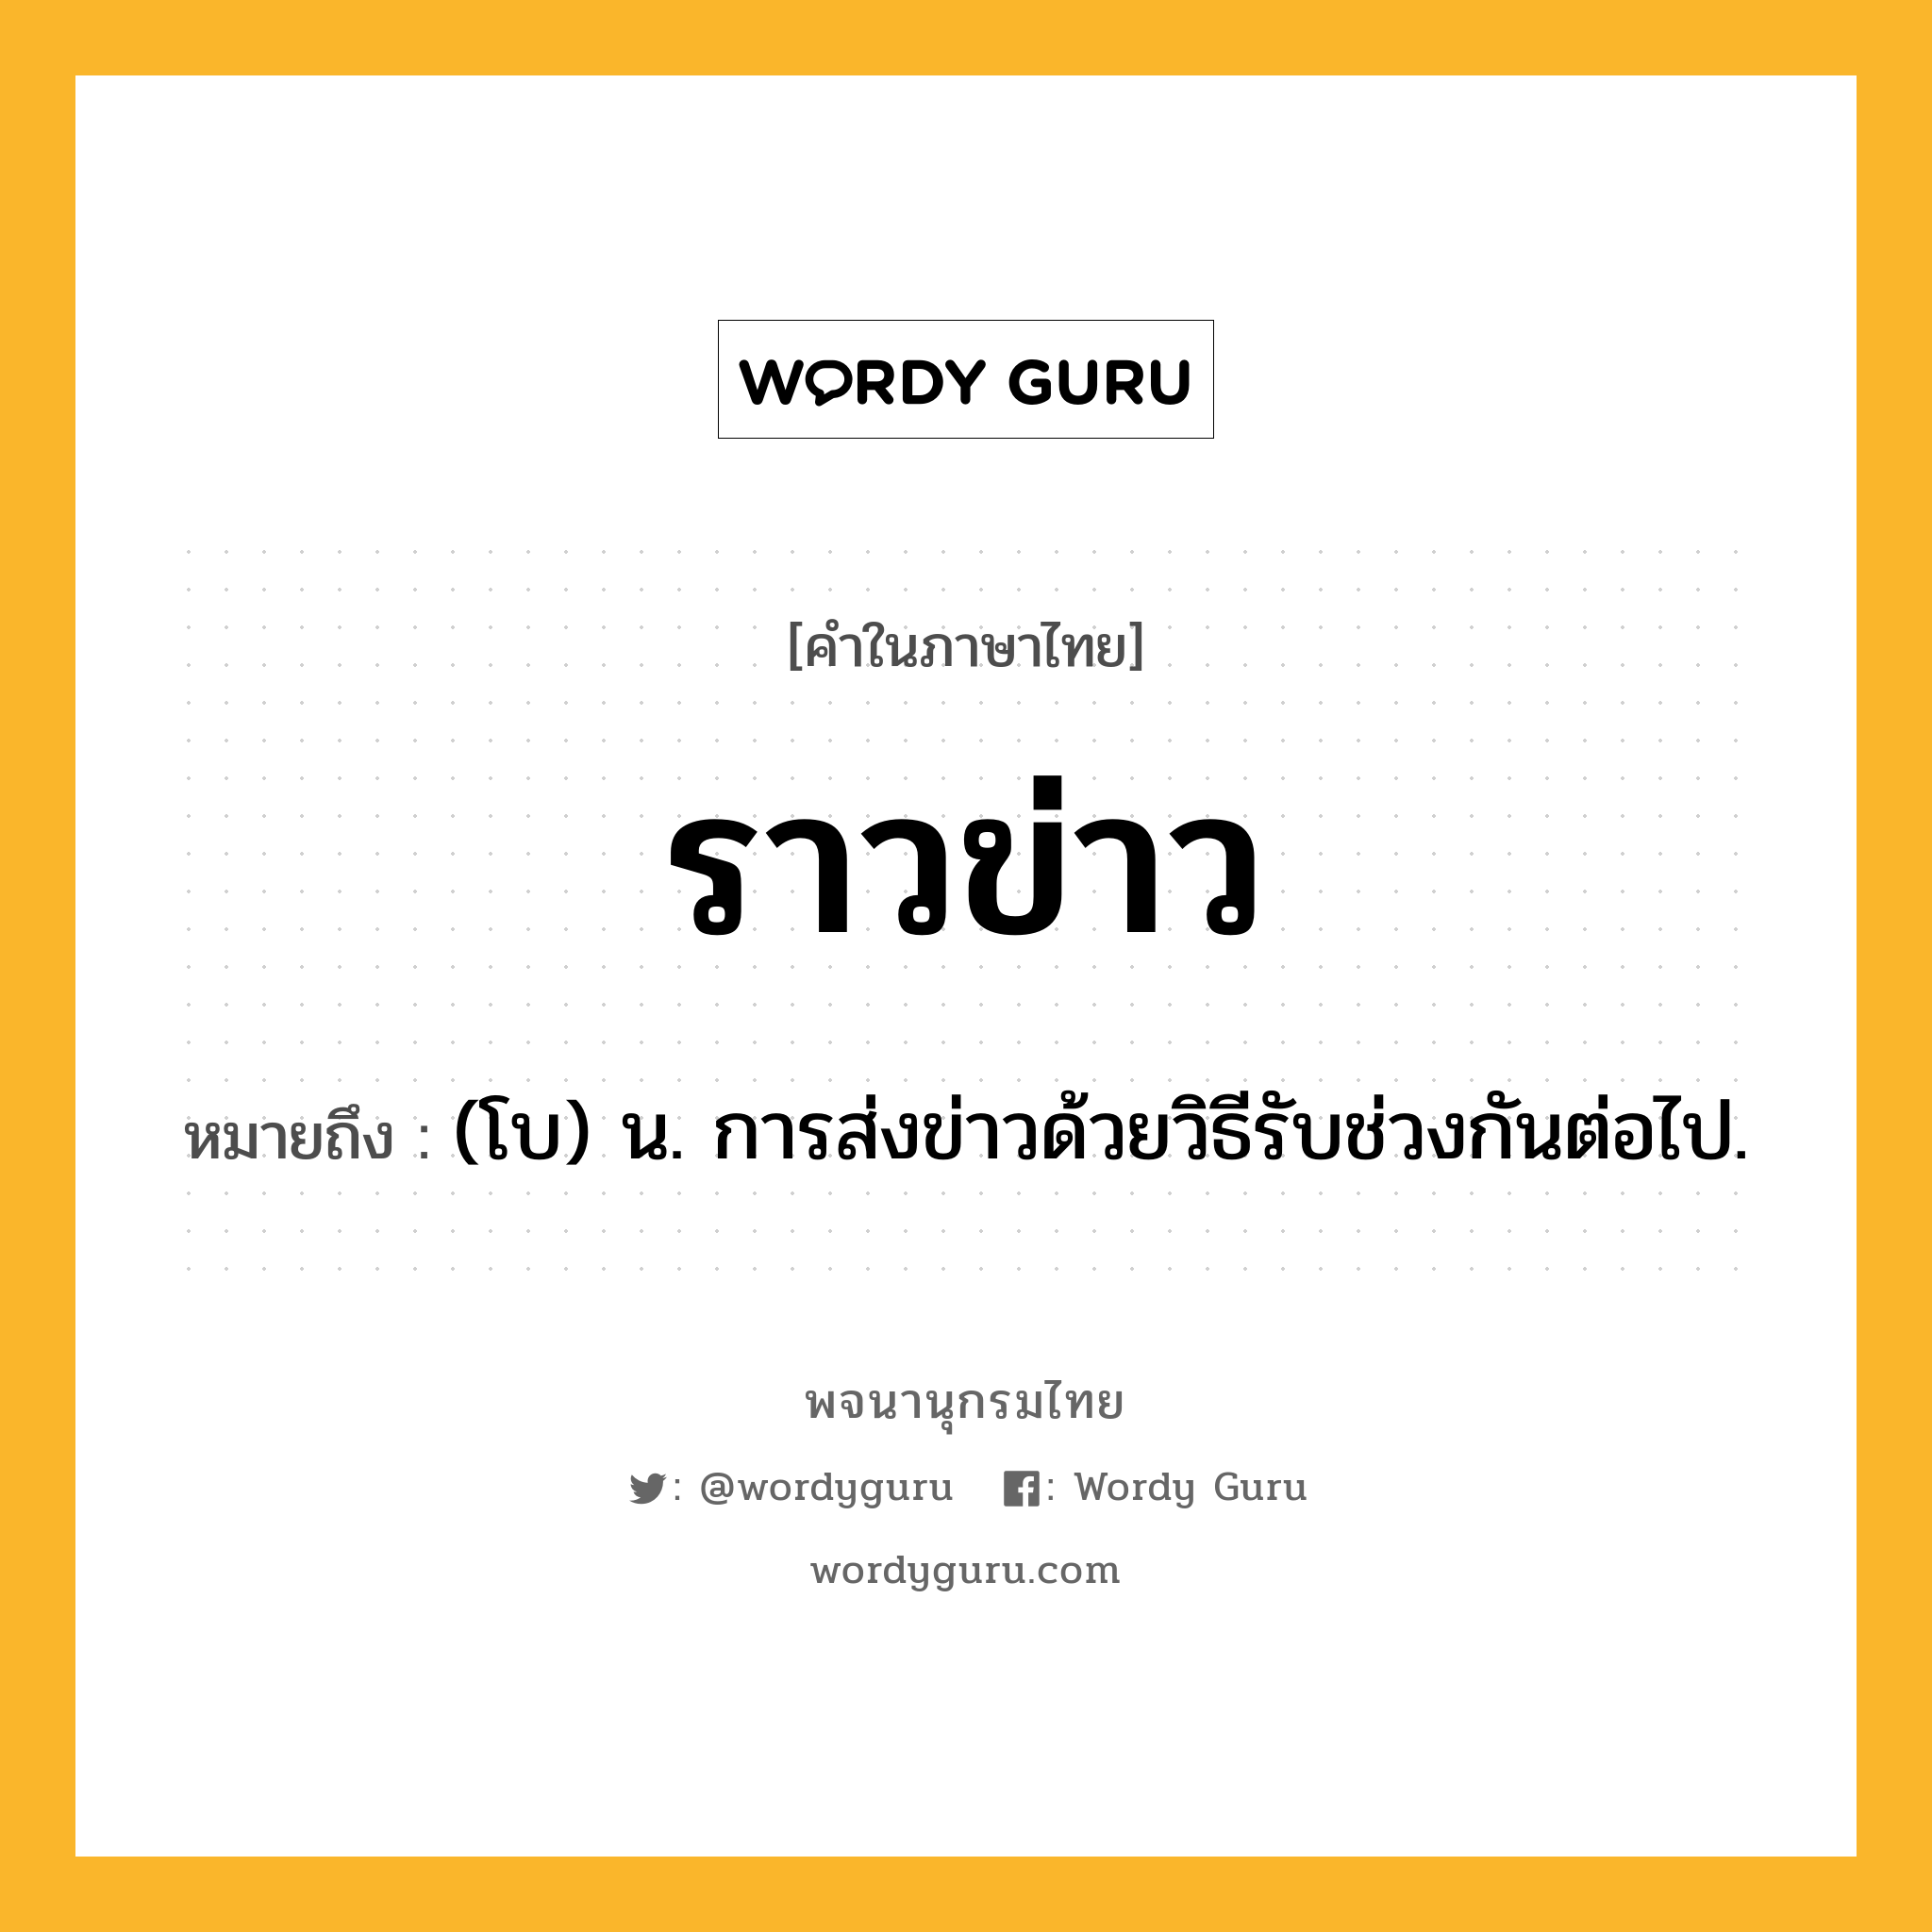 ราวข่าว ความหมาย หมายถึงอะไร?, คำในภาษาไทย ราวข่าว หมายถึง (โบ) น. การส่งข่าวด้วยวิธีรับช่วงกันต่อไป.